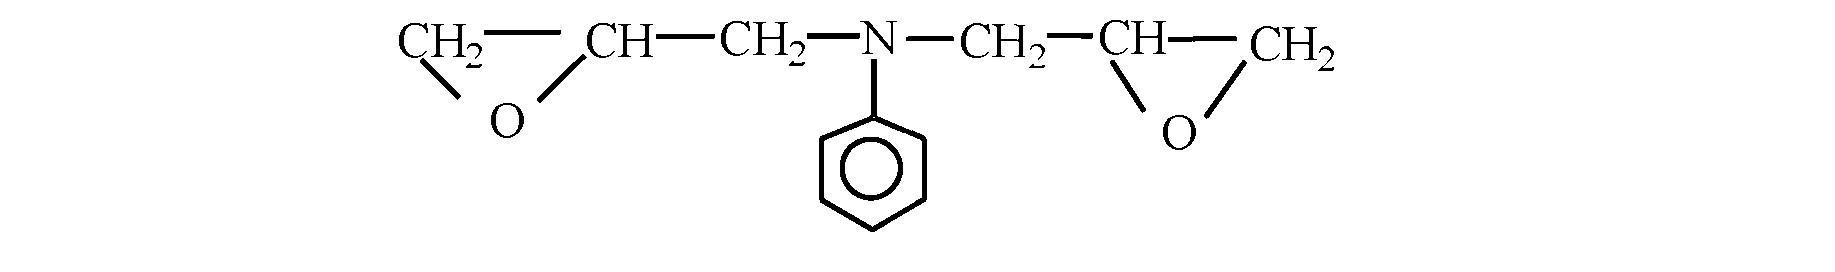 Исследование сорбционных свойств ионитов на основе глицидилового производного анилина и полиаминов